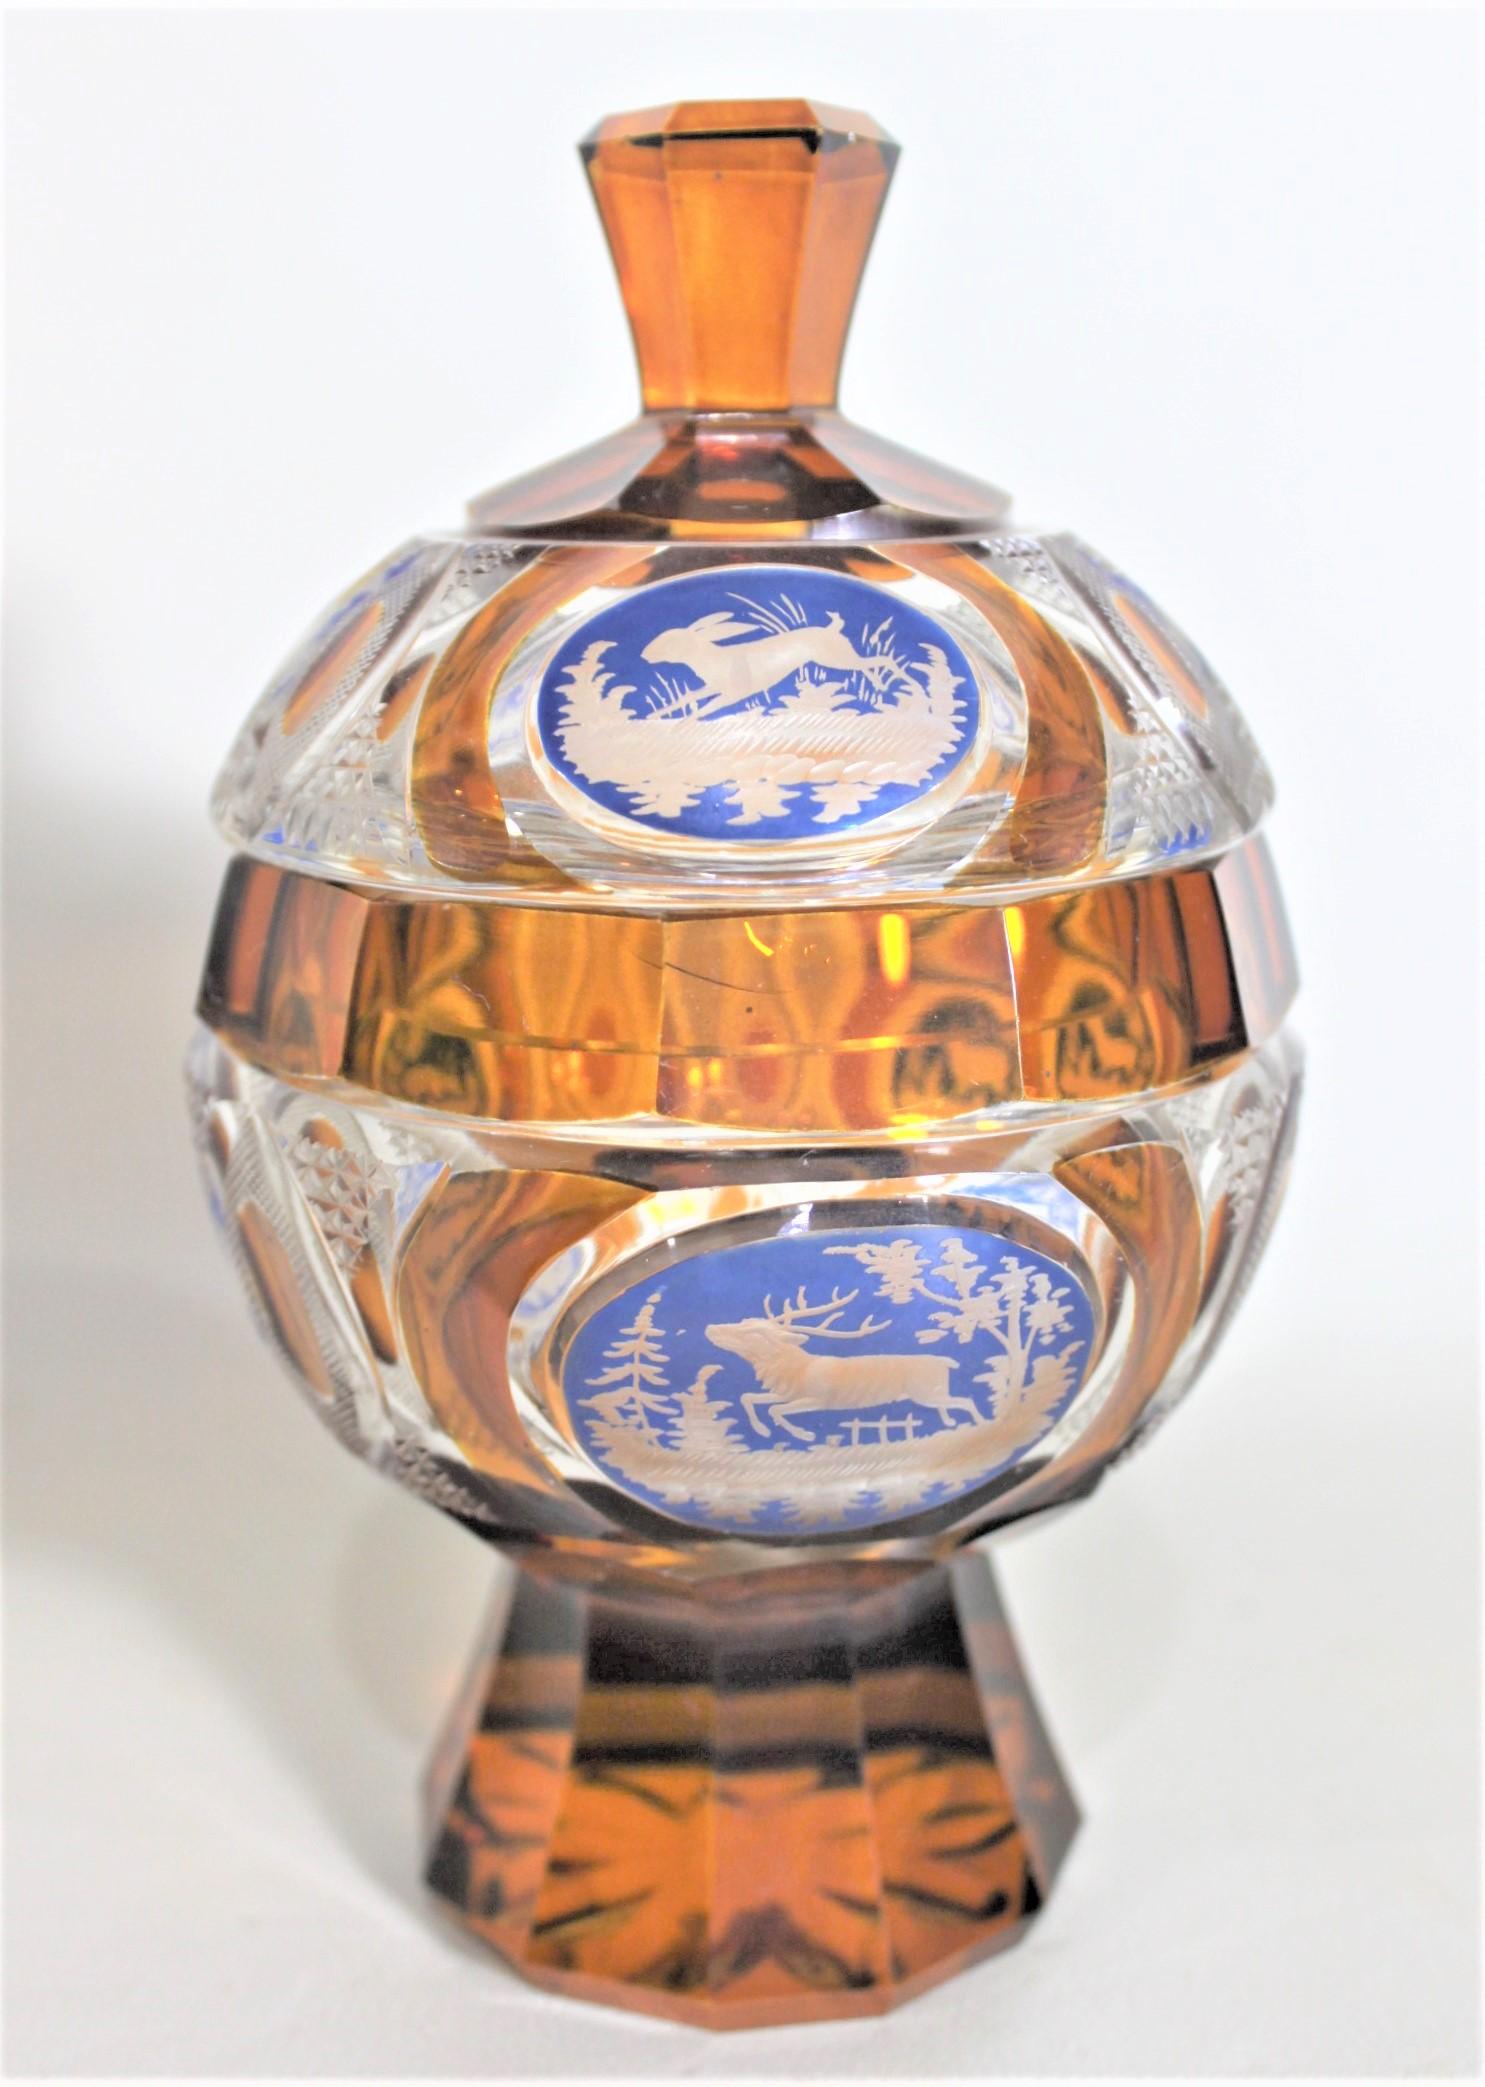 Esta compota cubierta de cristal tallado estilo copa no está firmada, pero se supone que fue fabricada en la región de Bohemia, probablemente en la República Checa, aproximadamente en 1920. En la compota se ha utilizado cristal ámbar y azul muy bien